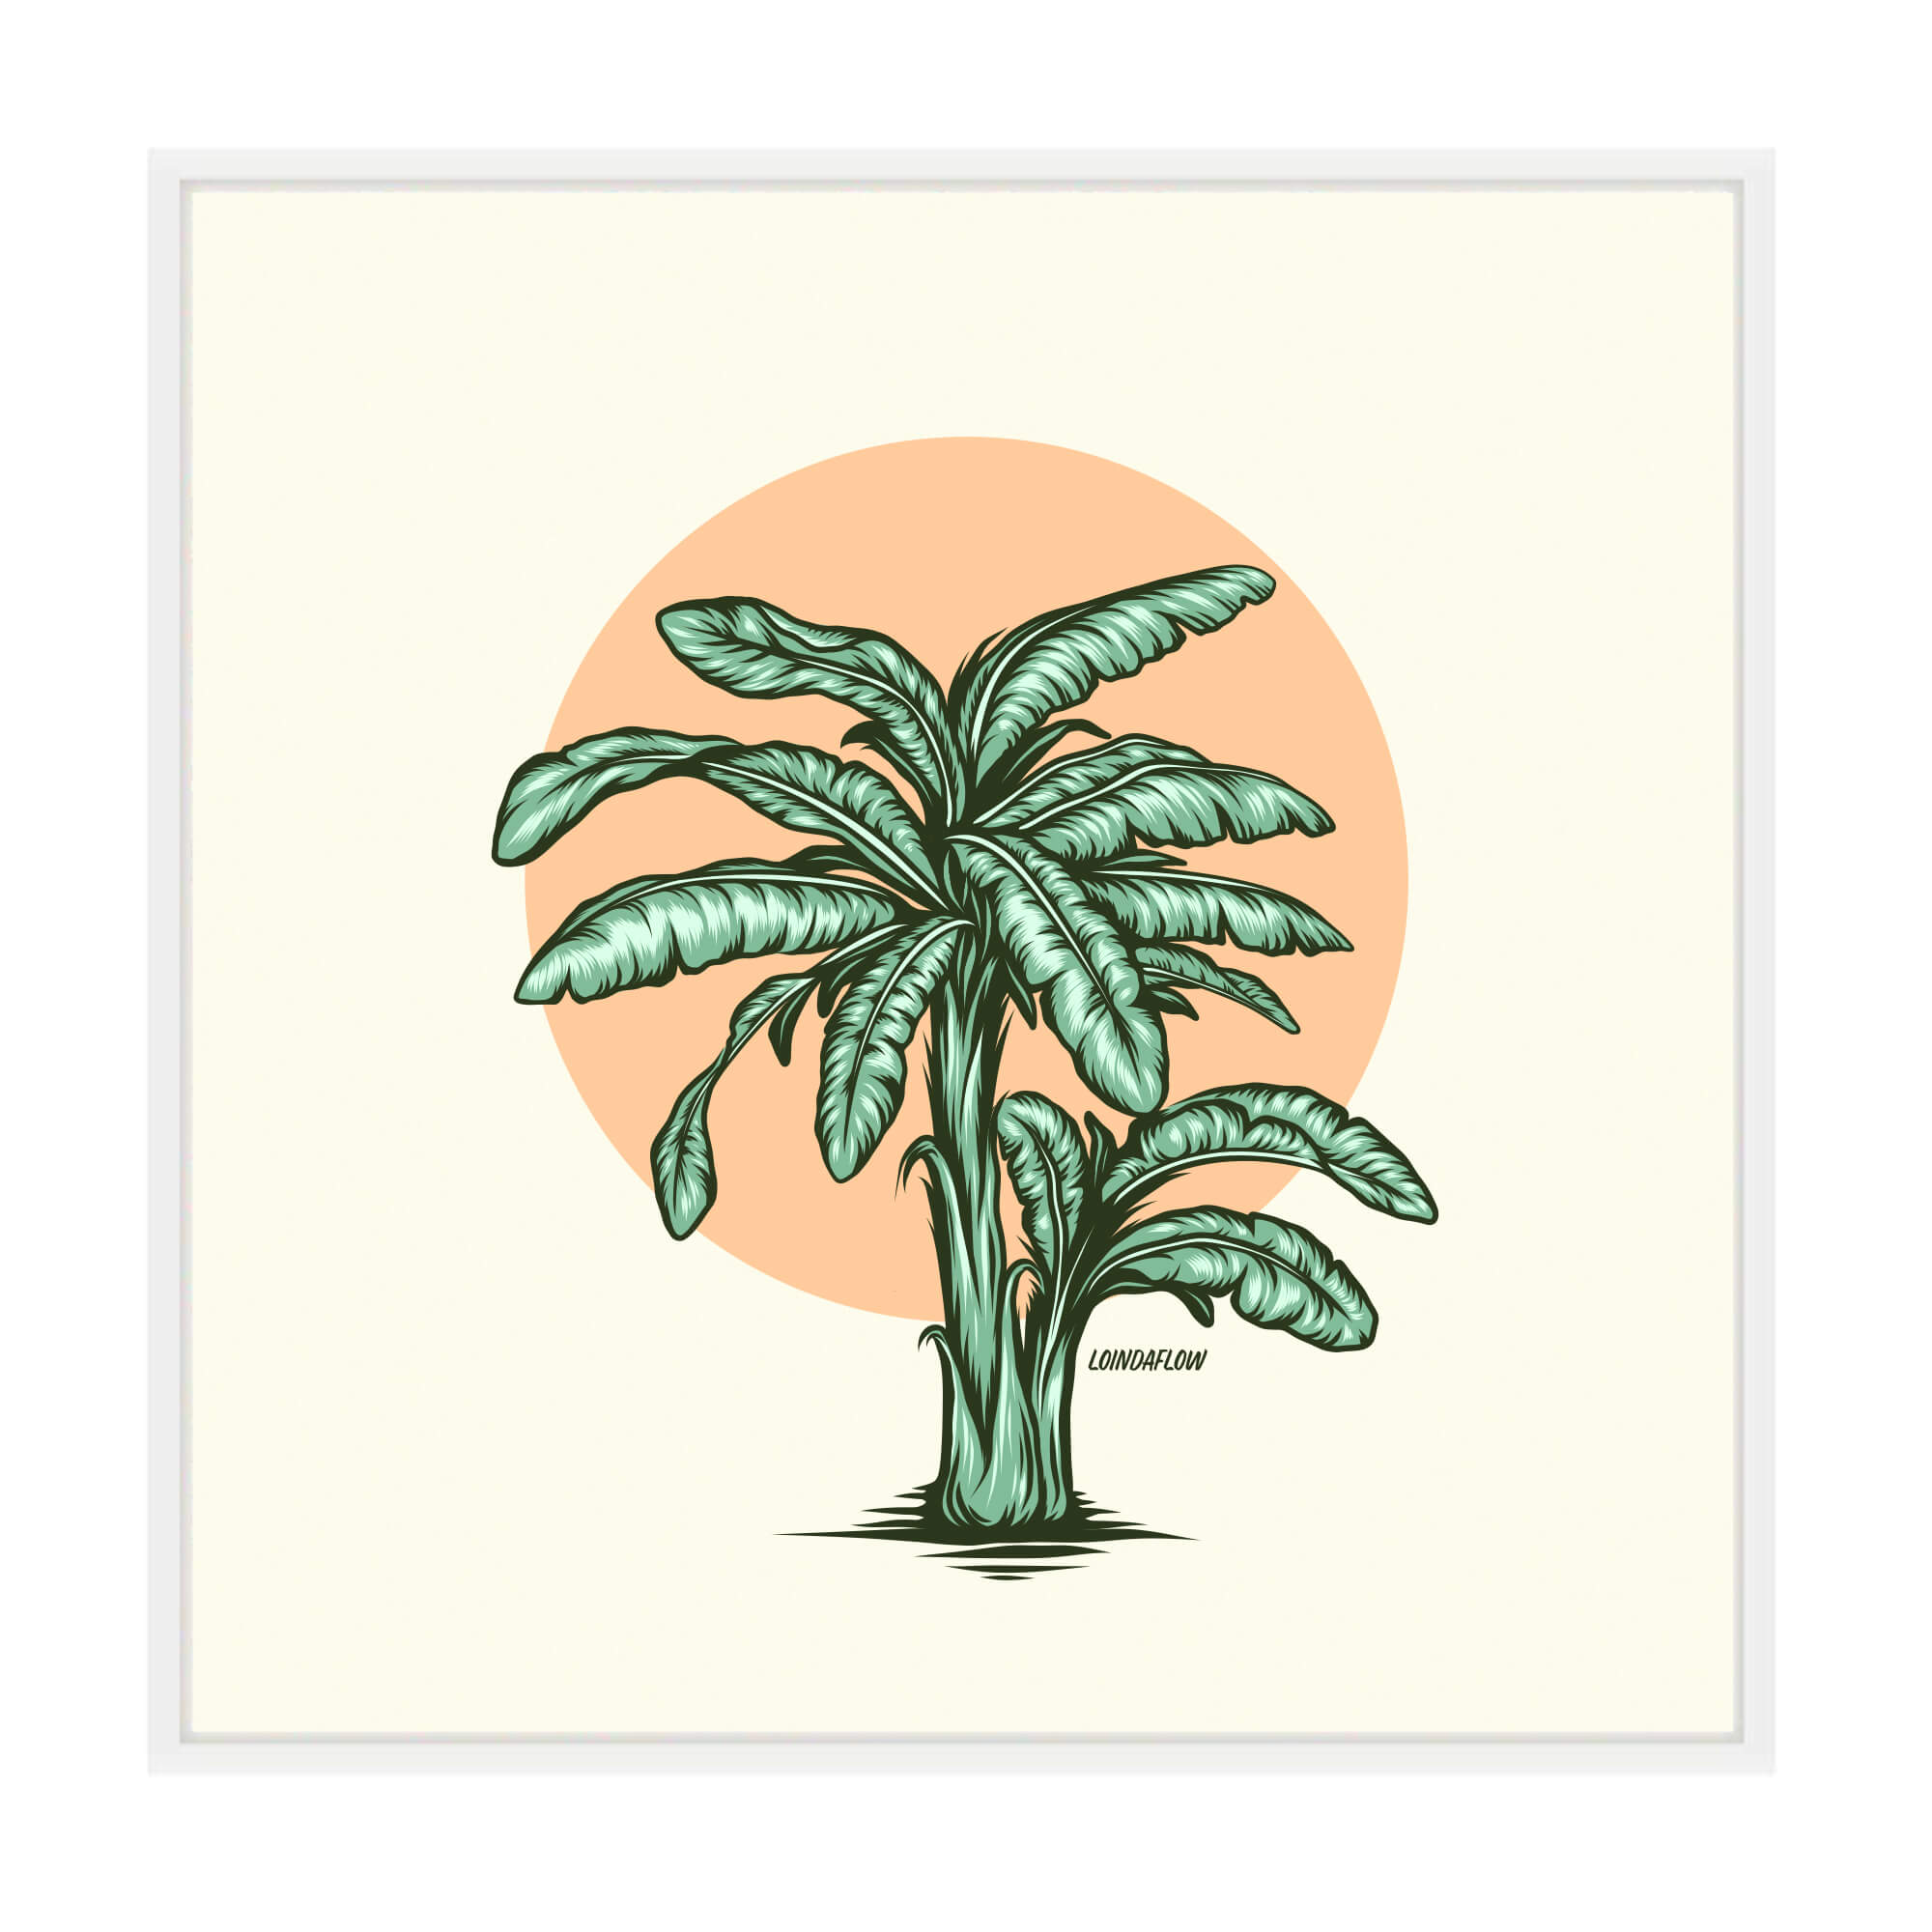 Canvas giclée print of a tropical plant by Hawaii artist Laihha Organna